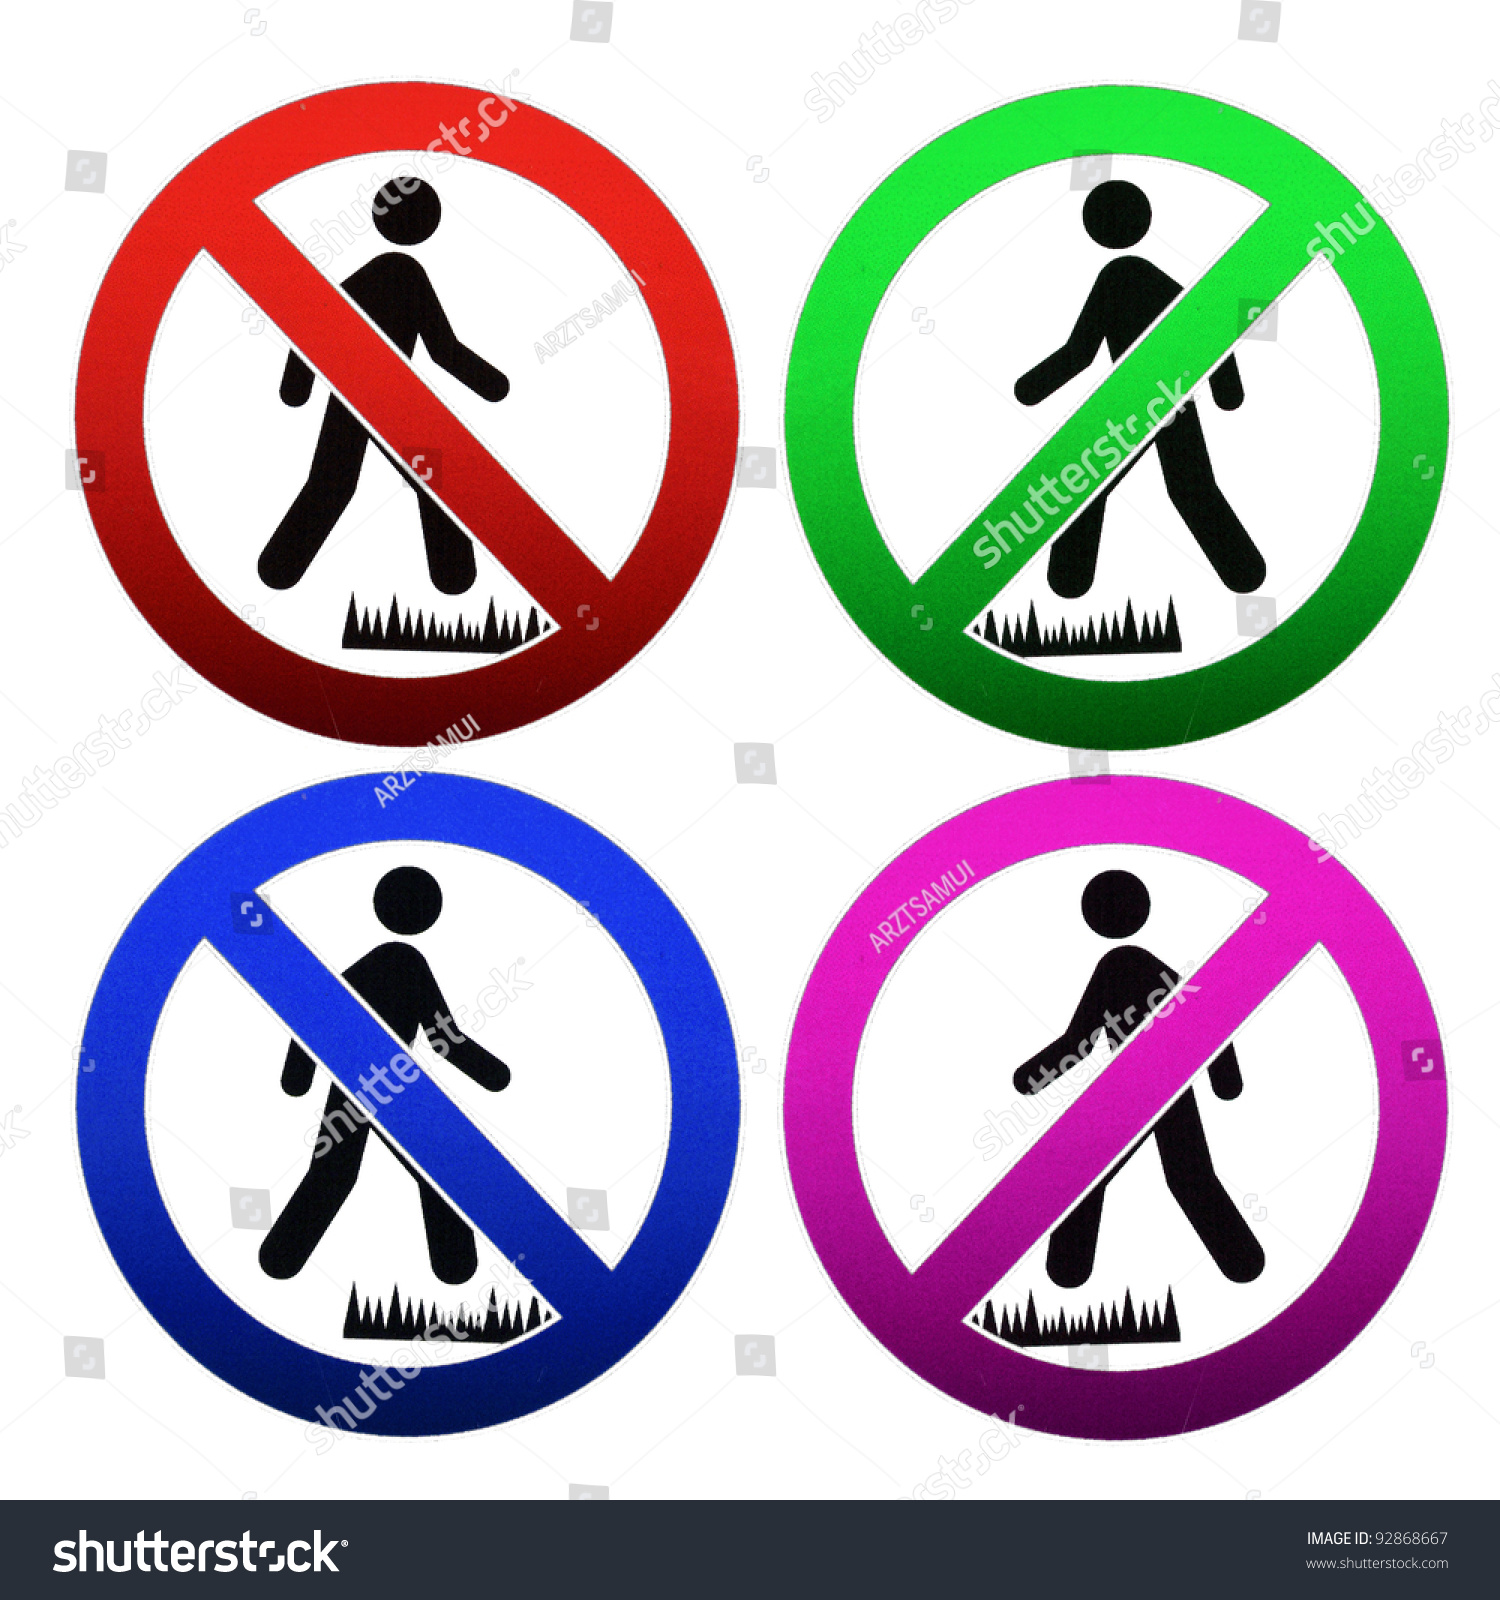 Sign Do Not Step On Grass Stock Illustration 92868667 - Shutterstock